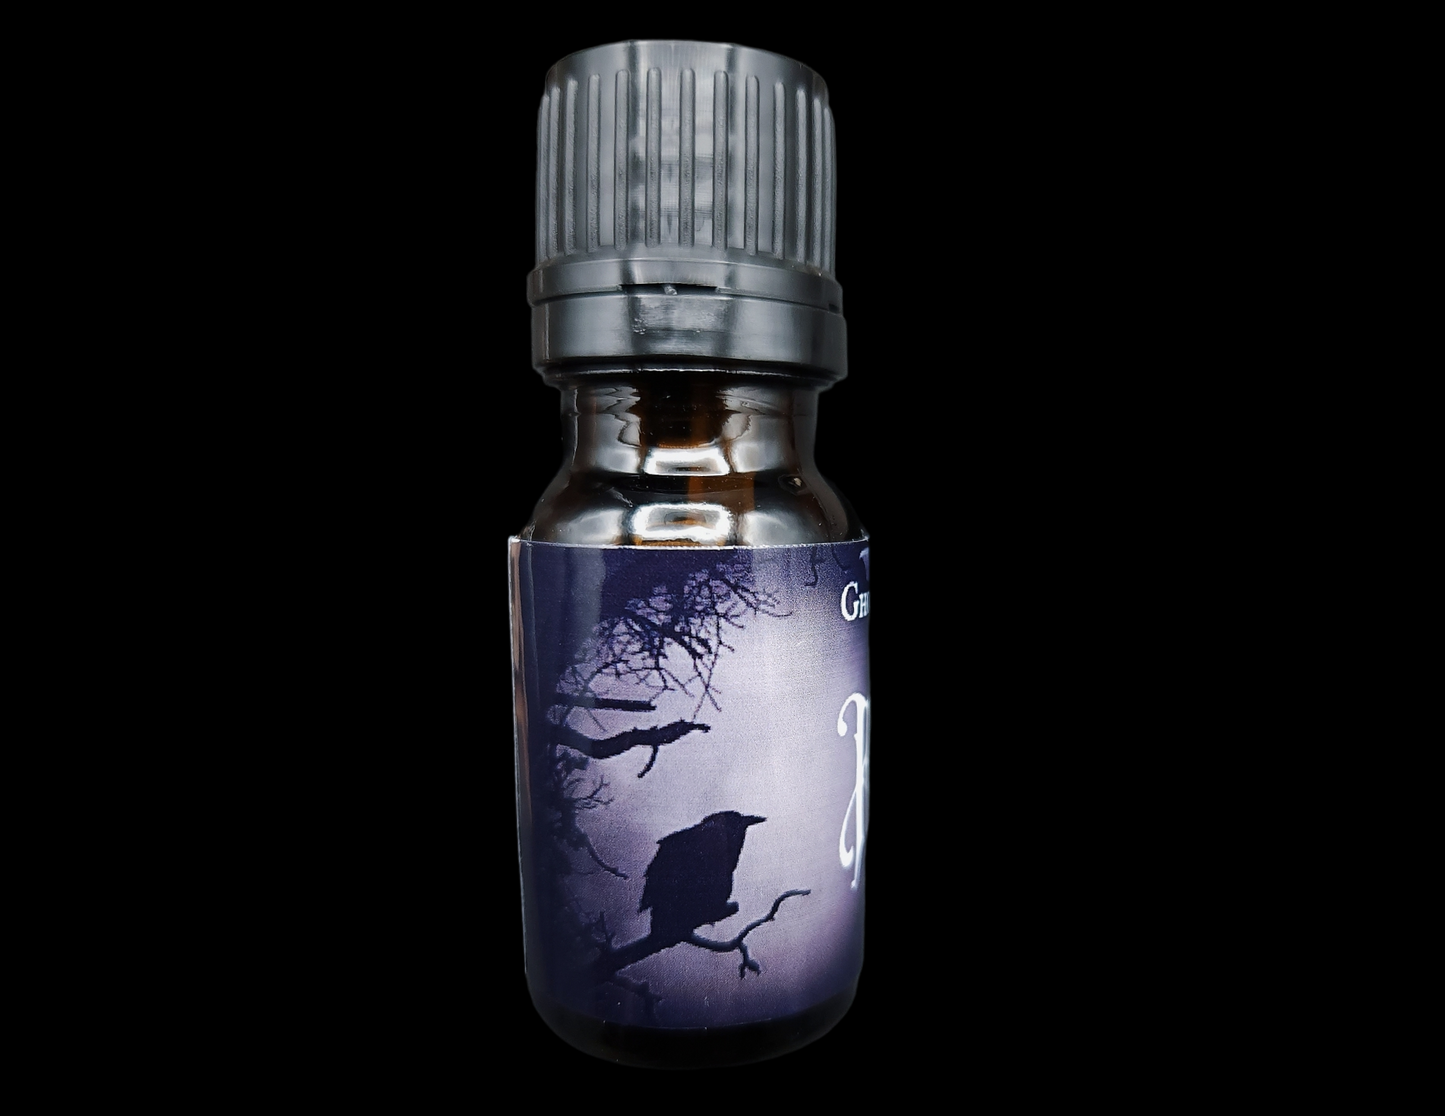 Raven Perfume Oil